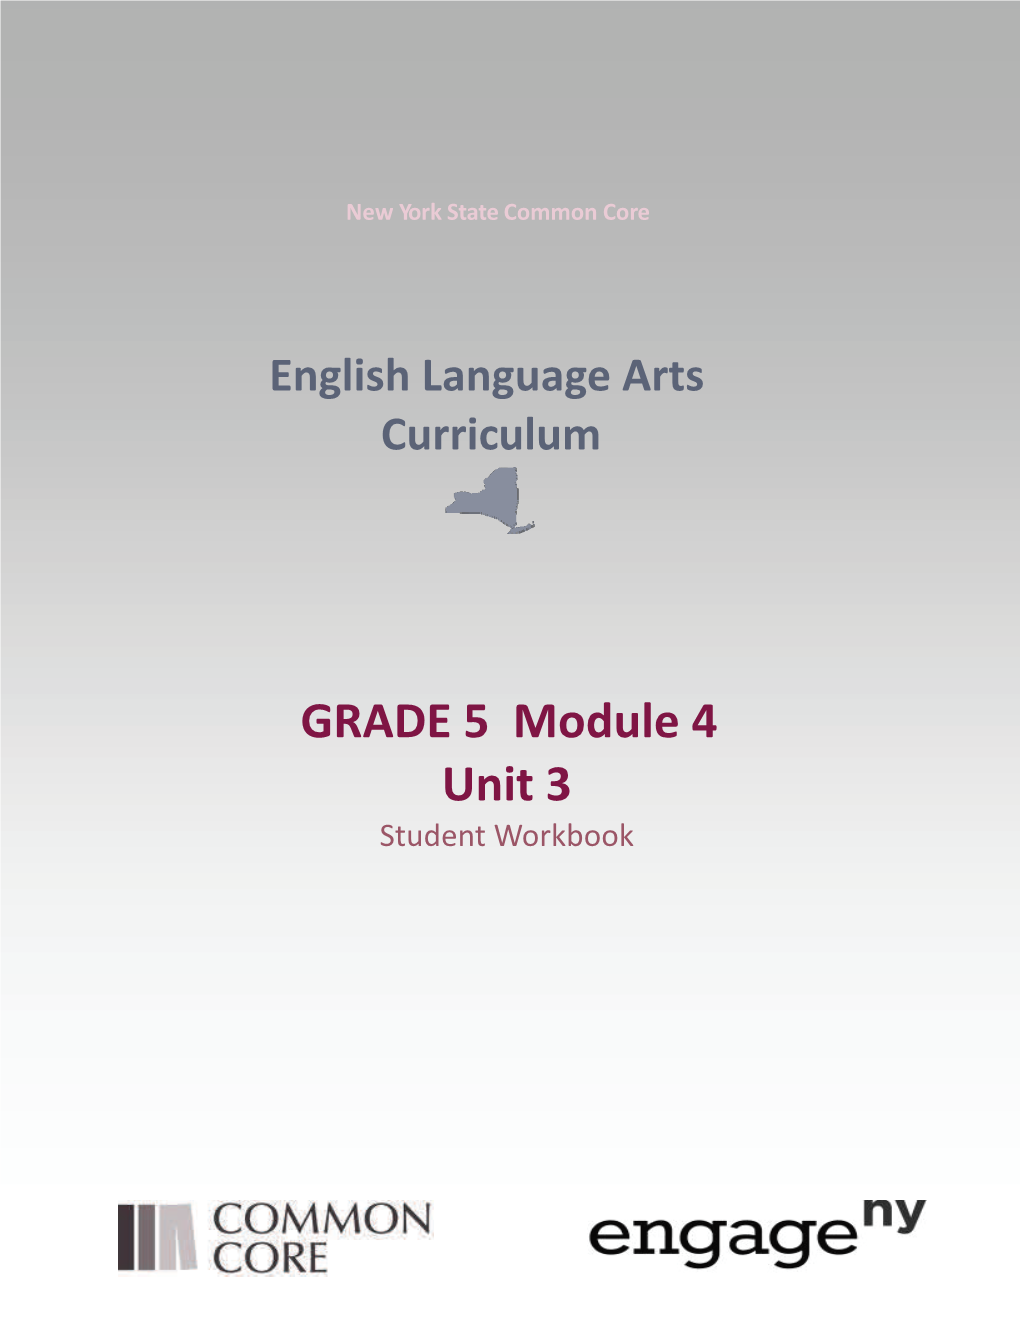 GRADE 5 Module 4 Unit 3 Student Workbook